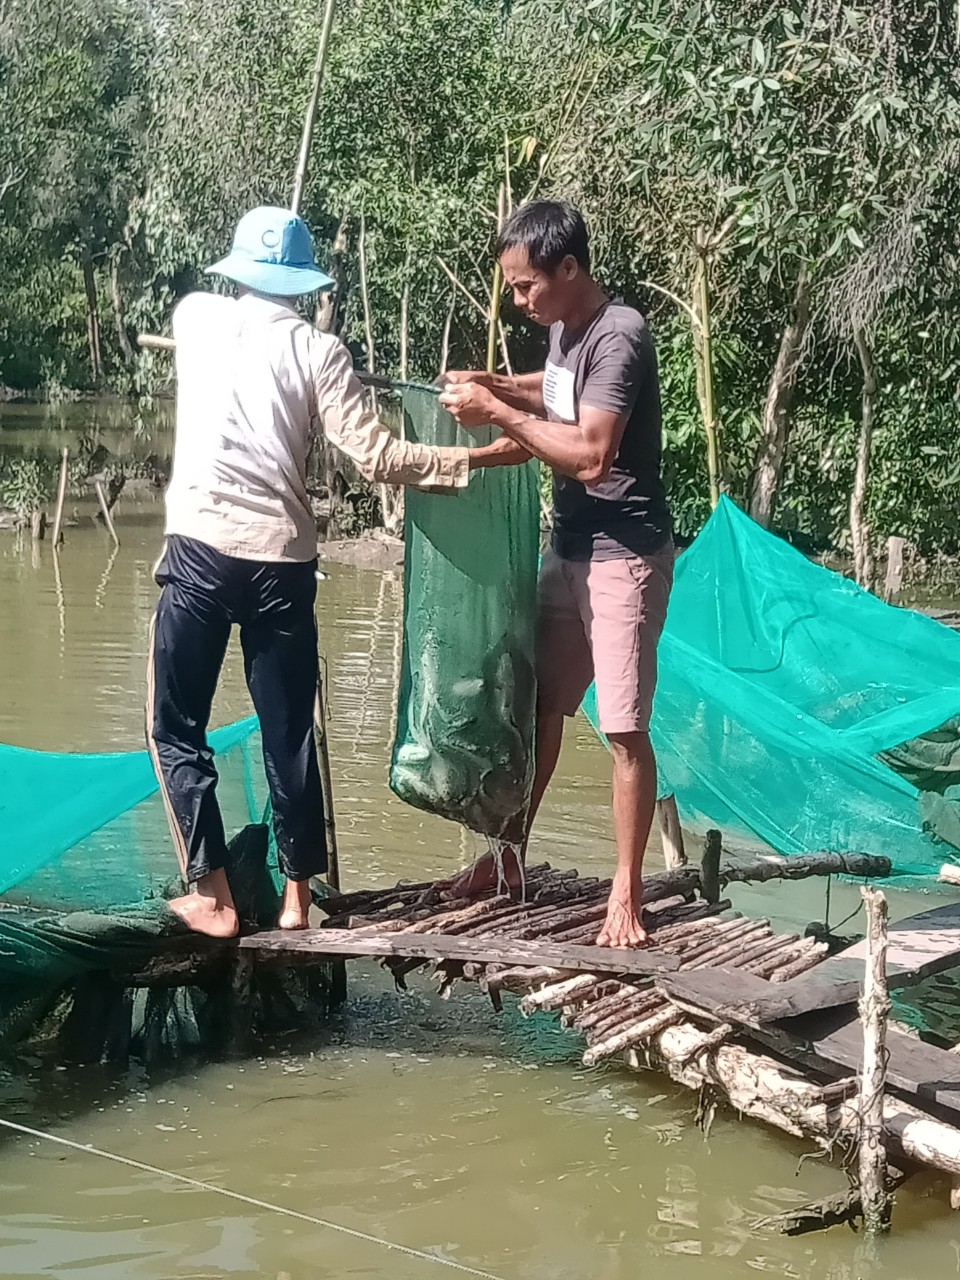 Tây Ninh: Nuôi loài cá ham mồi trong vèo lưới, nông dân bắt bán hàng tấn, lãi 500 triệu đồng - Ảnh 1.